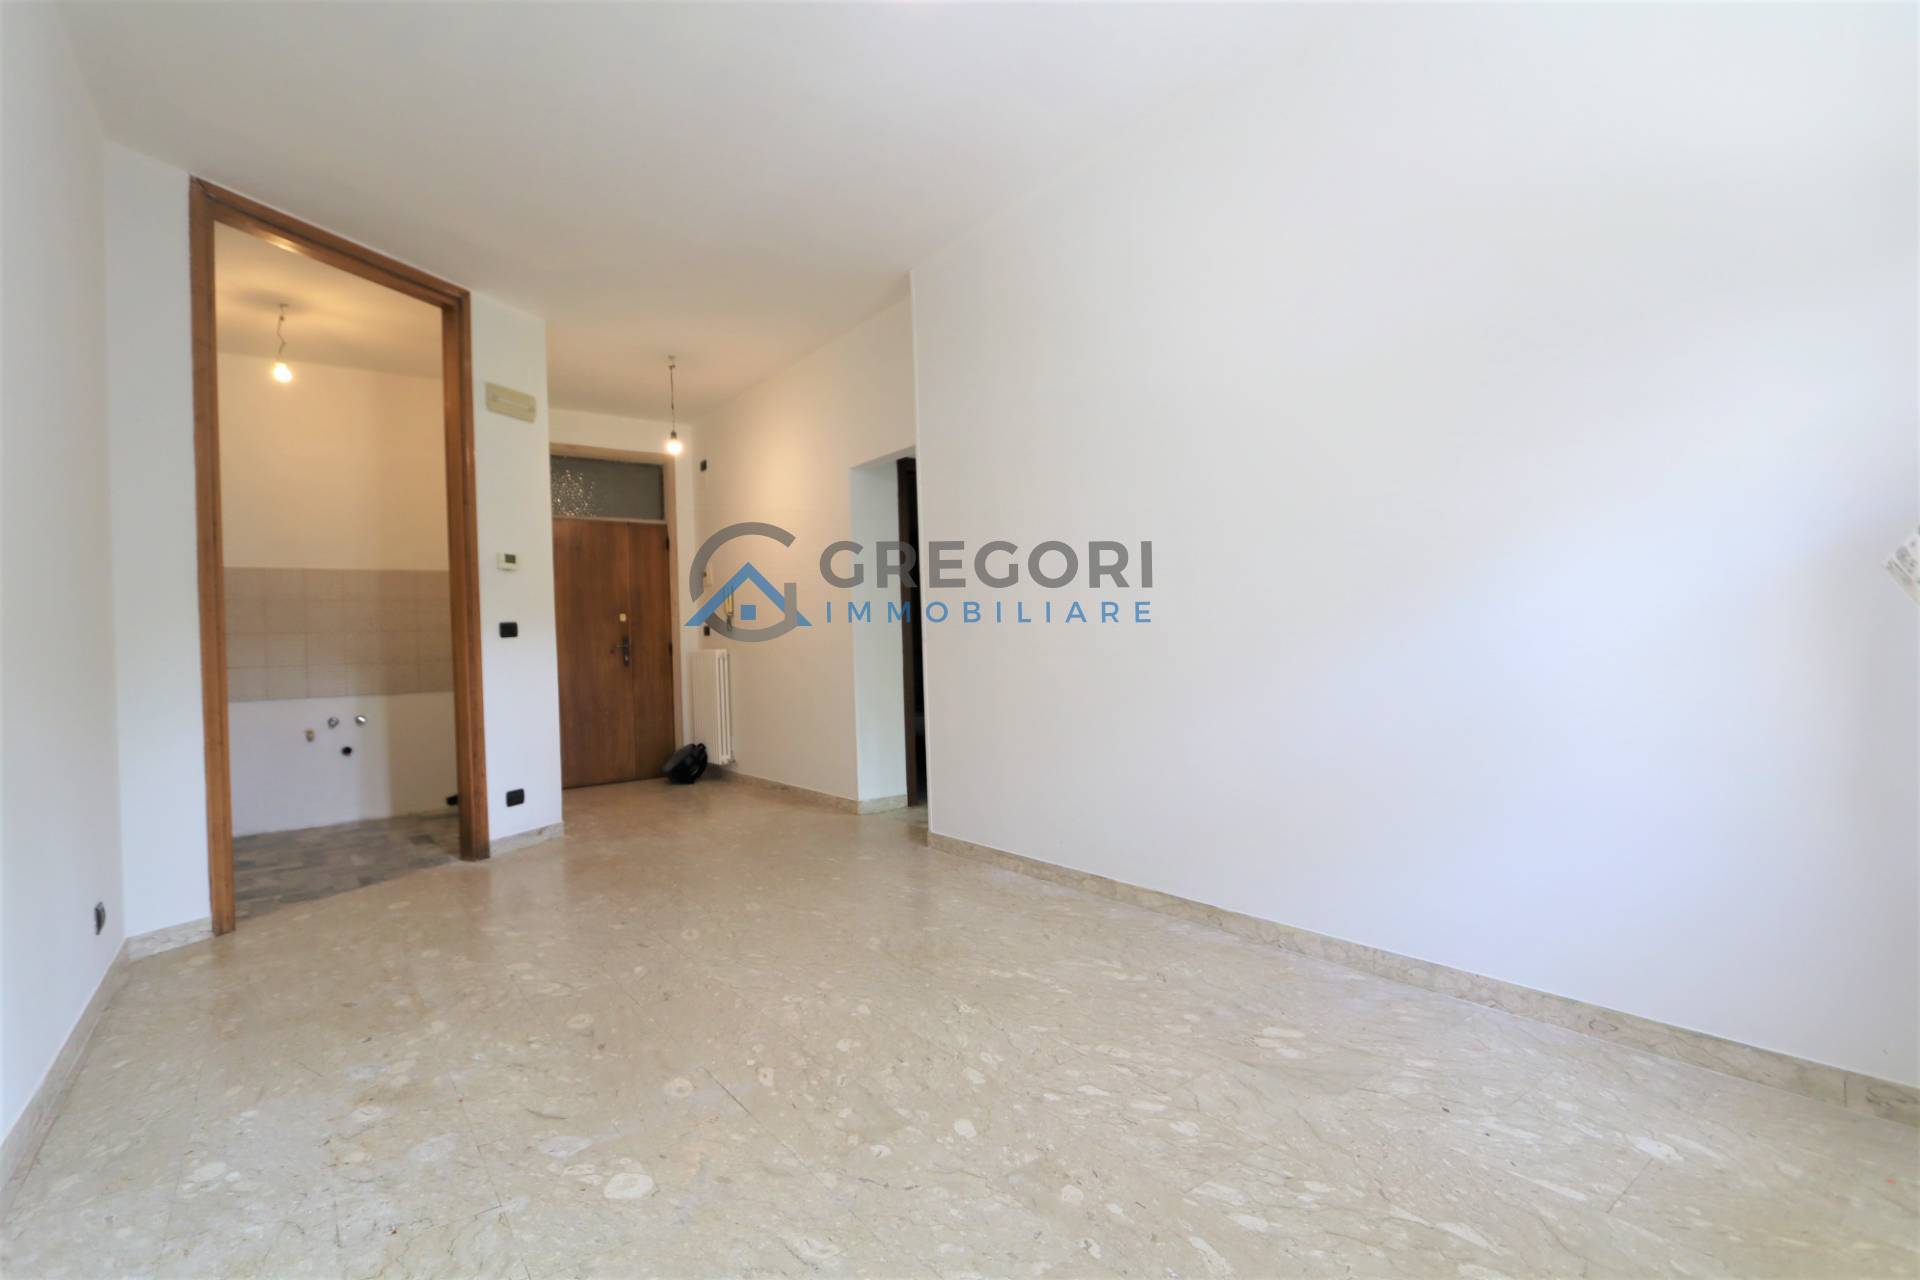 Appartamento in vendita a Martinsicuro, 2 locali, prezzo € 85.000 | PortaleAgenzieImmobiliari.it